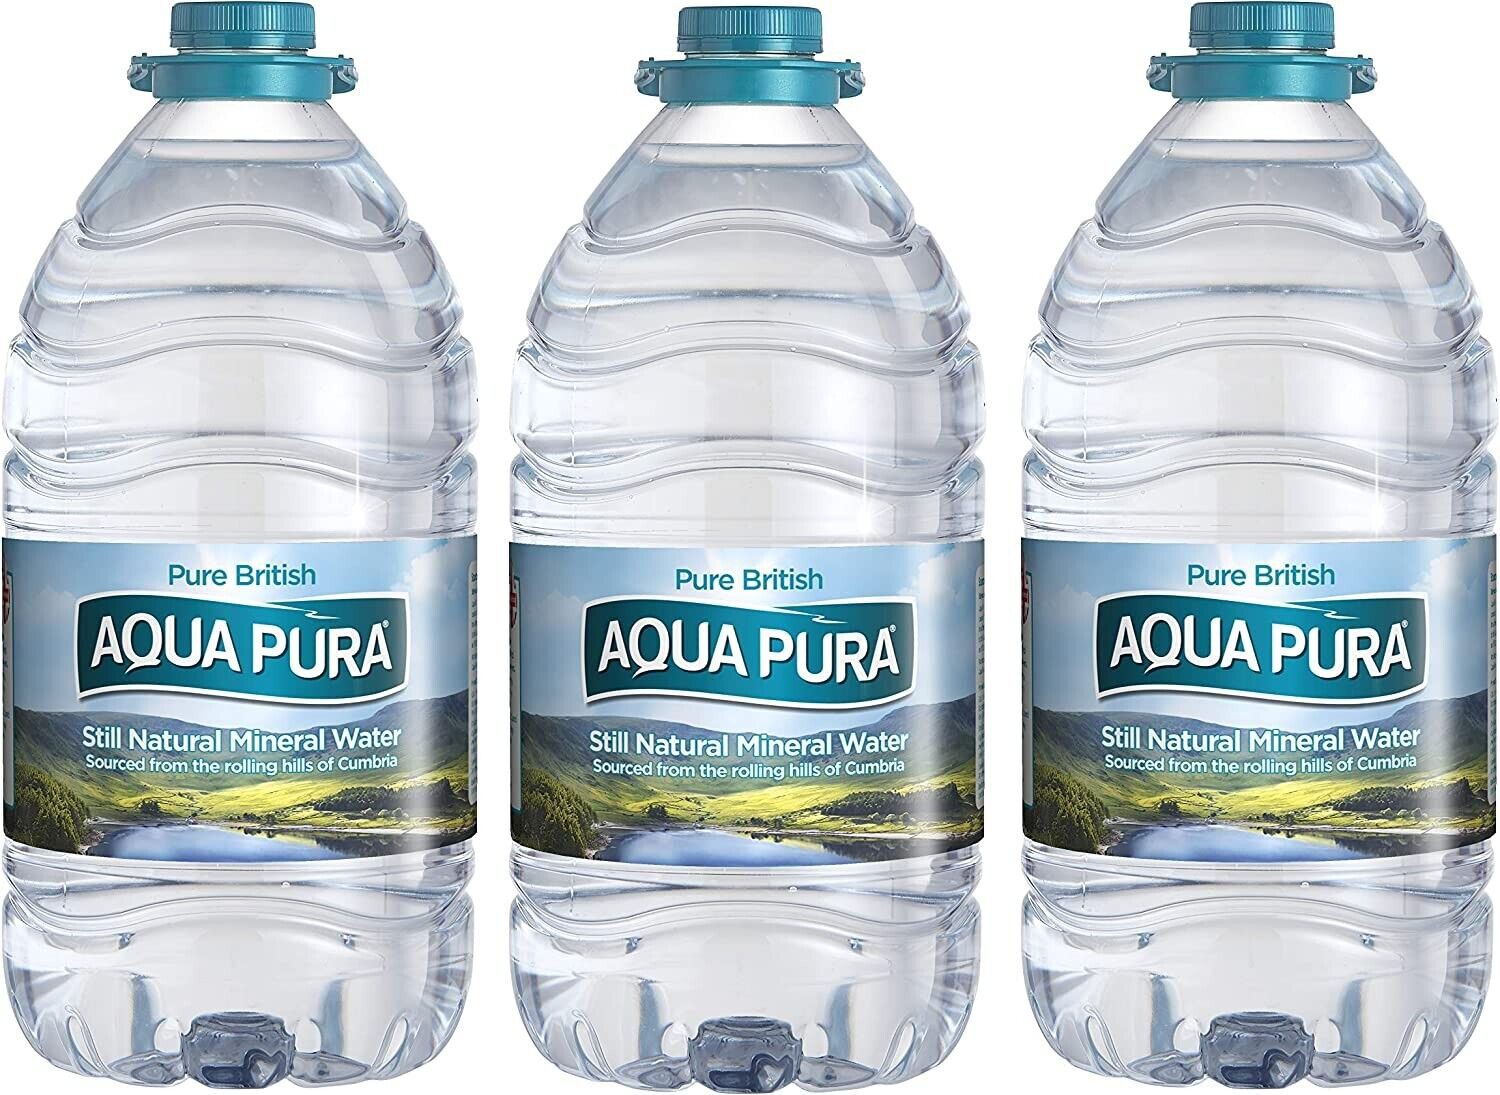 Aqua+Pura+Still+Natural+Mineral+Water+5+Litre+-+pack+of+3+